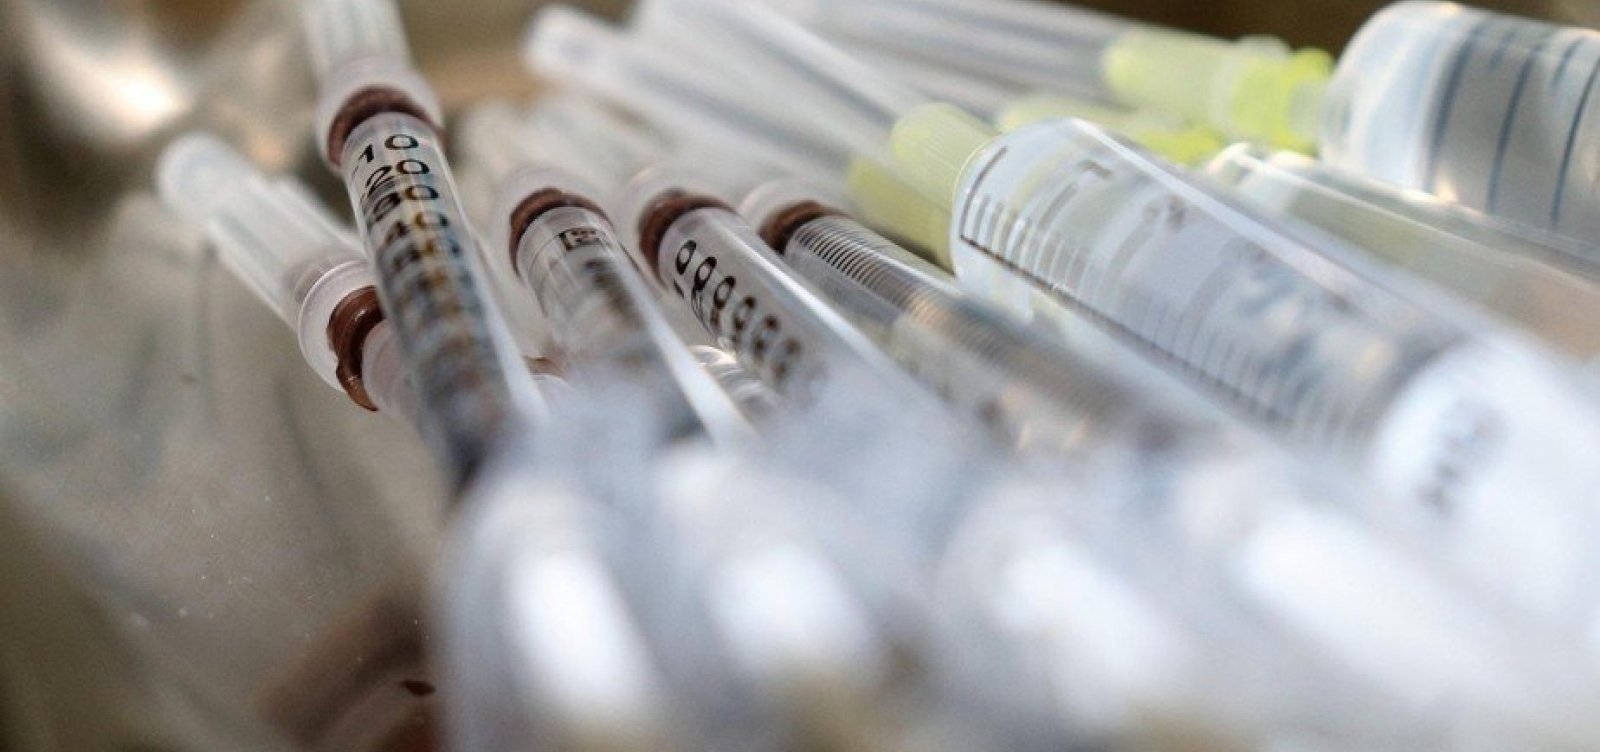 Jovens saudáveis devem esperar até 2022 para serem vacinados contra Covid-19, diz OMS